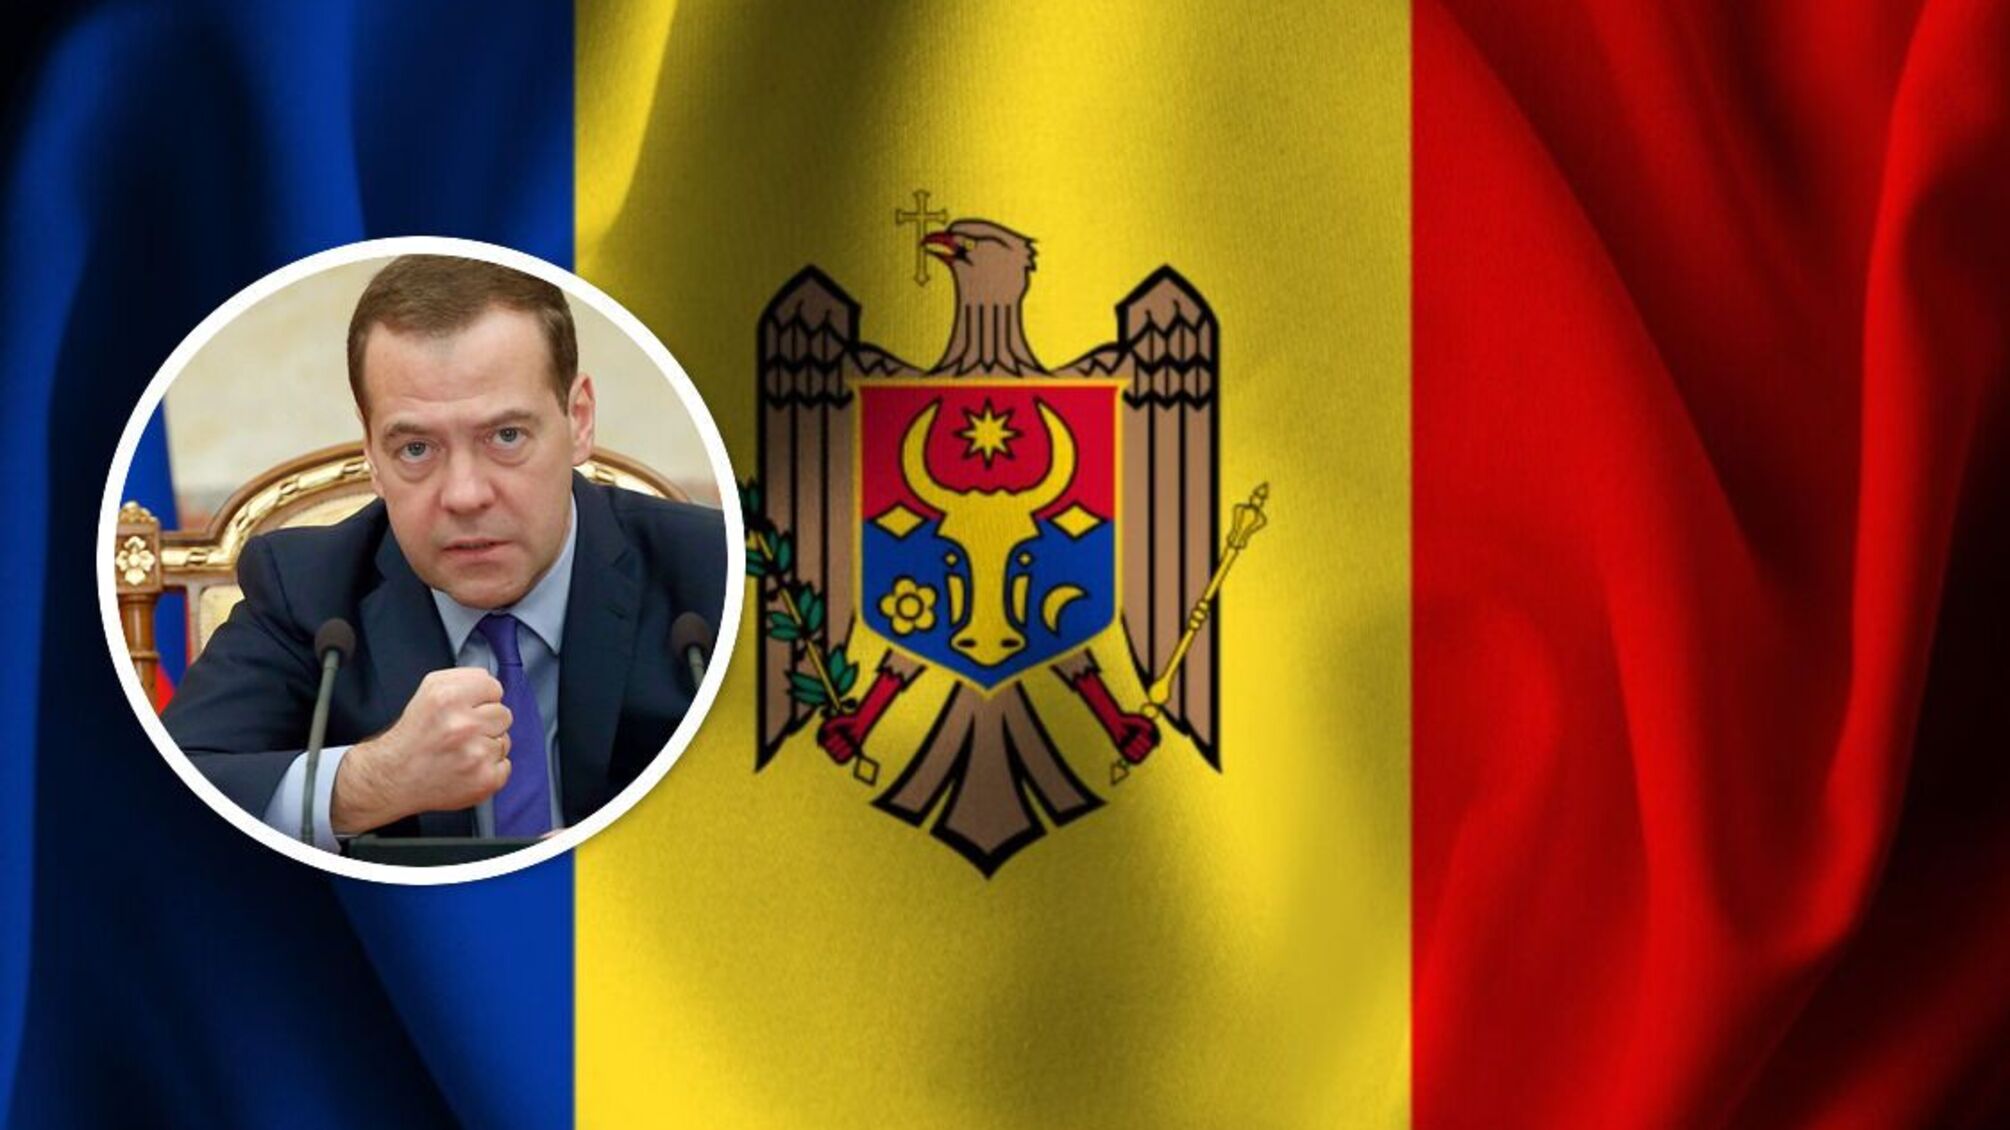 Медведев угрожает Молдове: помните о 200 тысячах российских граждан в Приднестровье